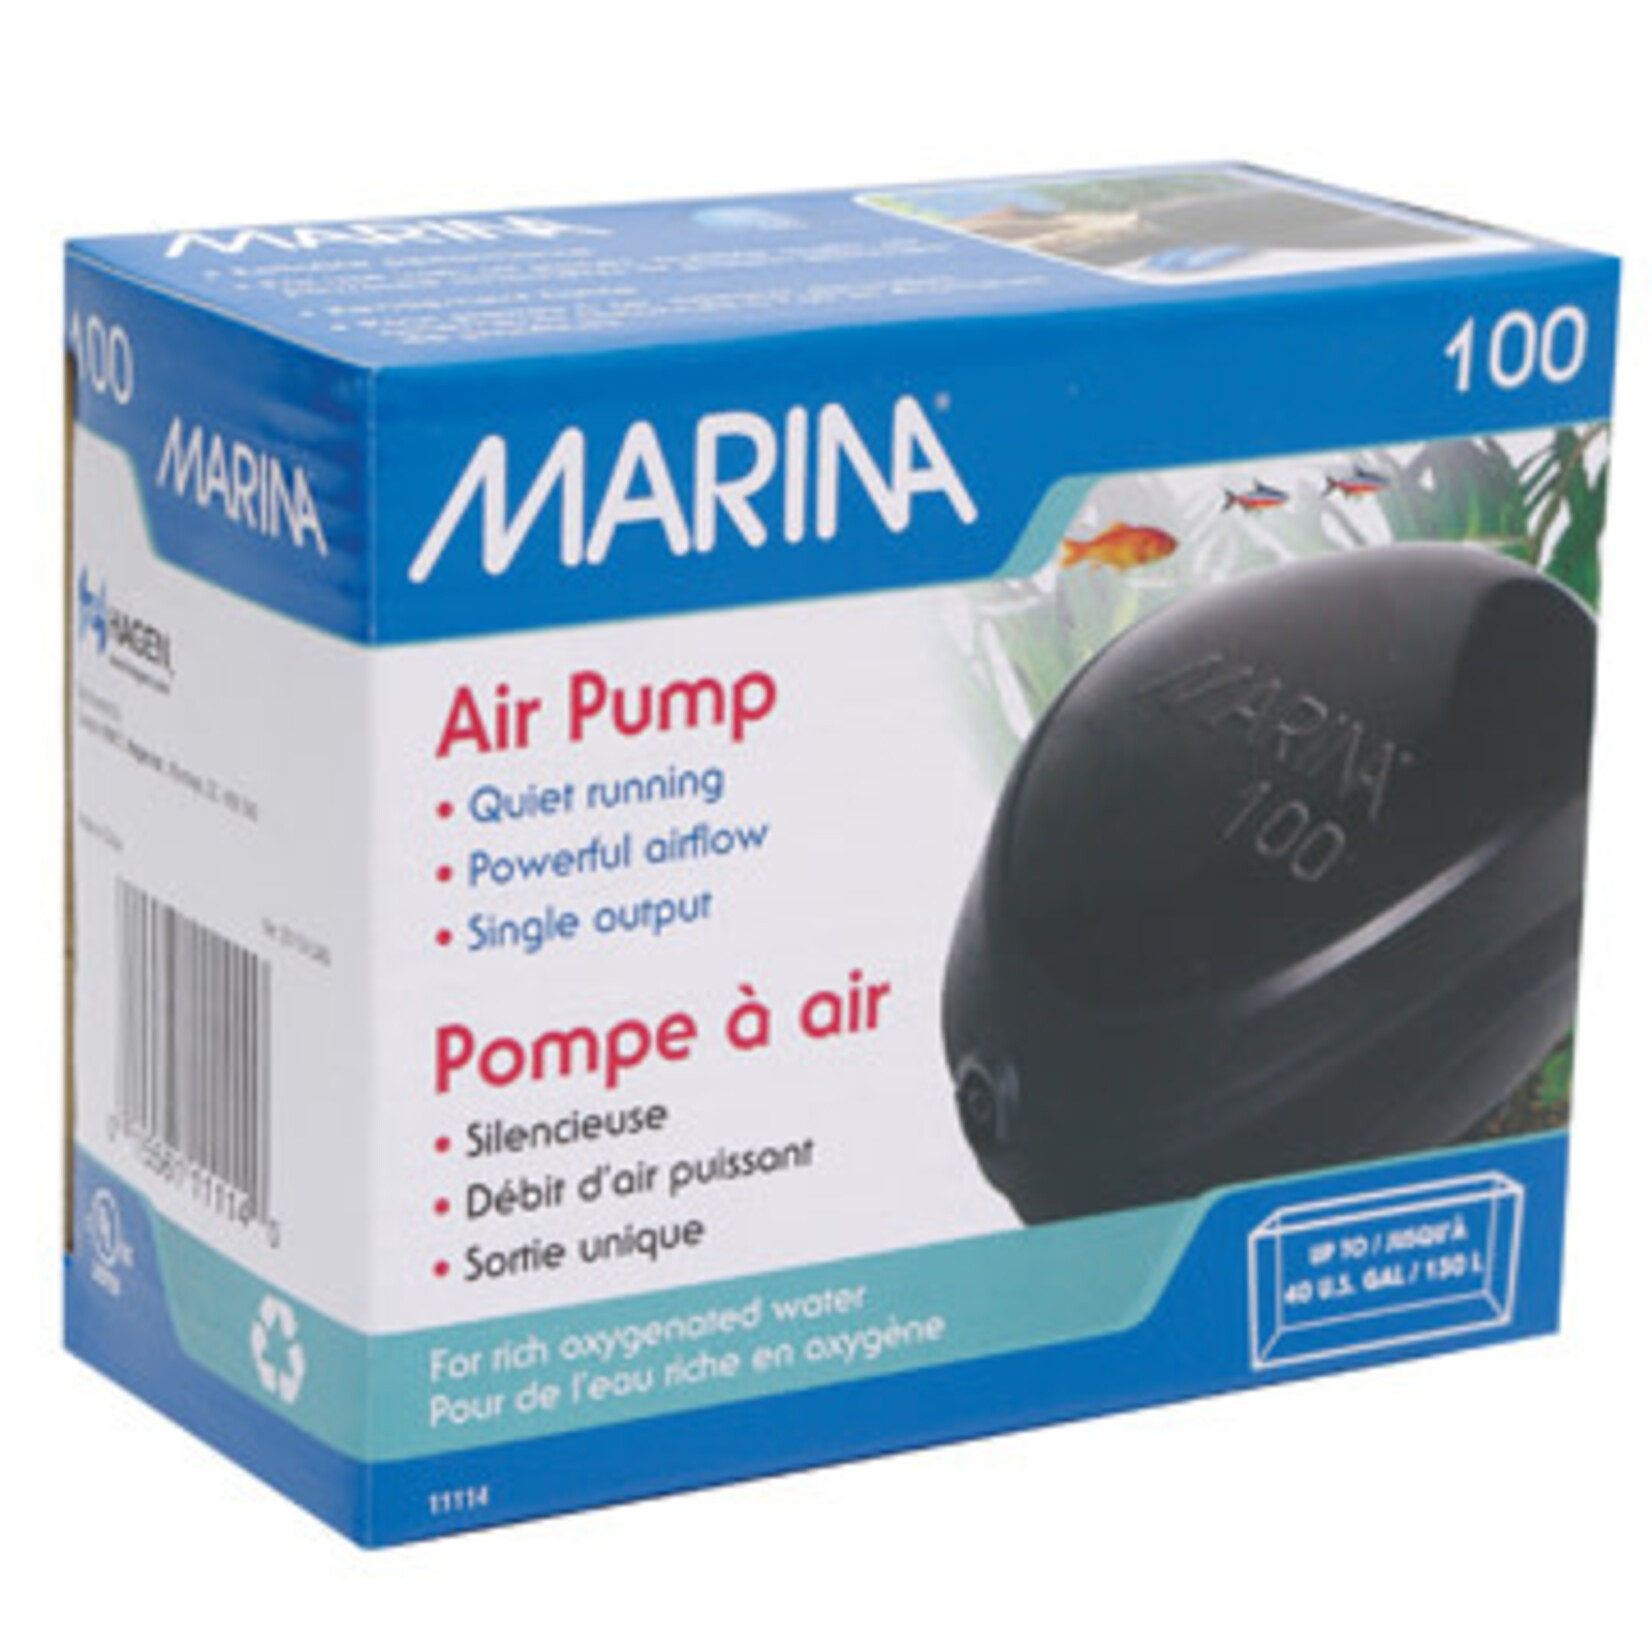 MARINA Marina 100 Air pump - 40 US gal (150 L)